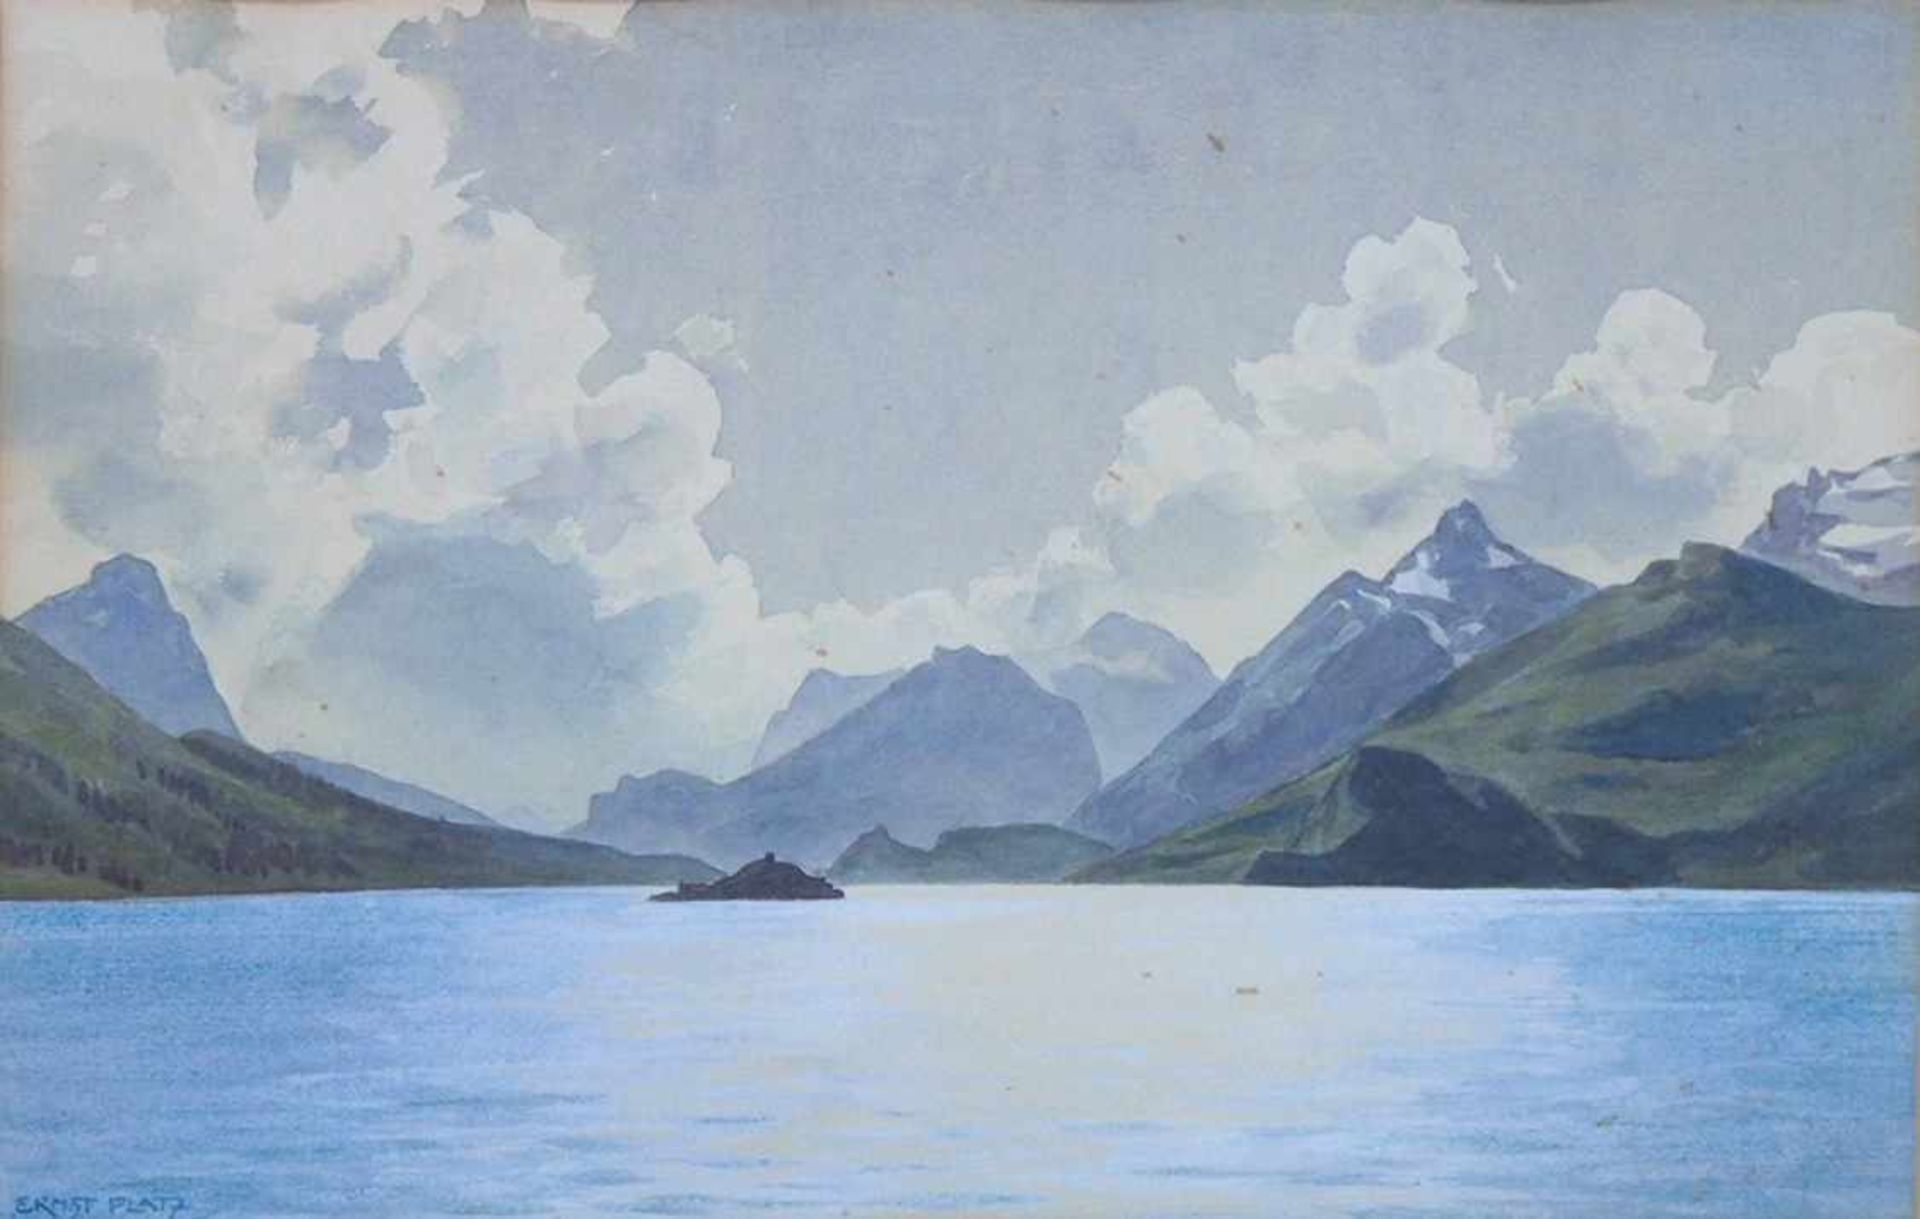 PLATZ, Ernst Heinrich1867-1940Gebirgssee mit InselAquarell auf Papier, signiert unten links, 27 x 41